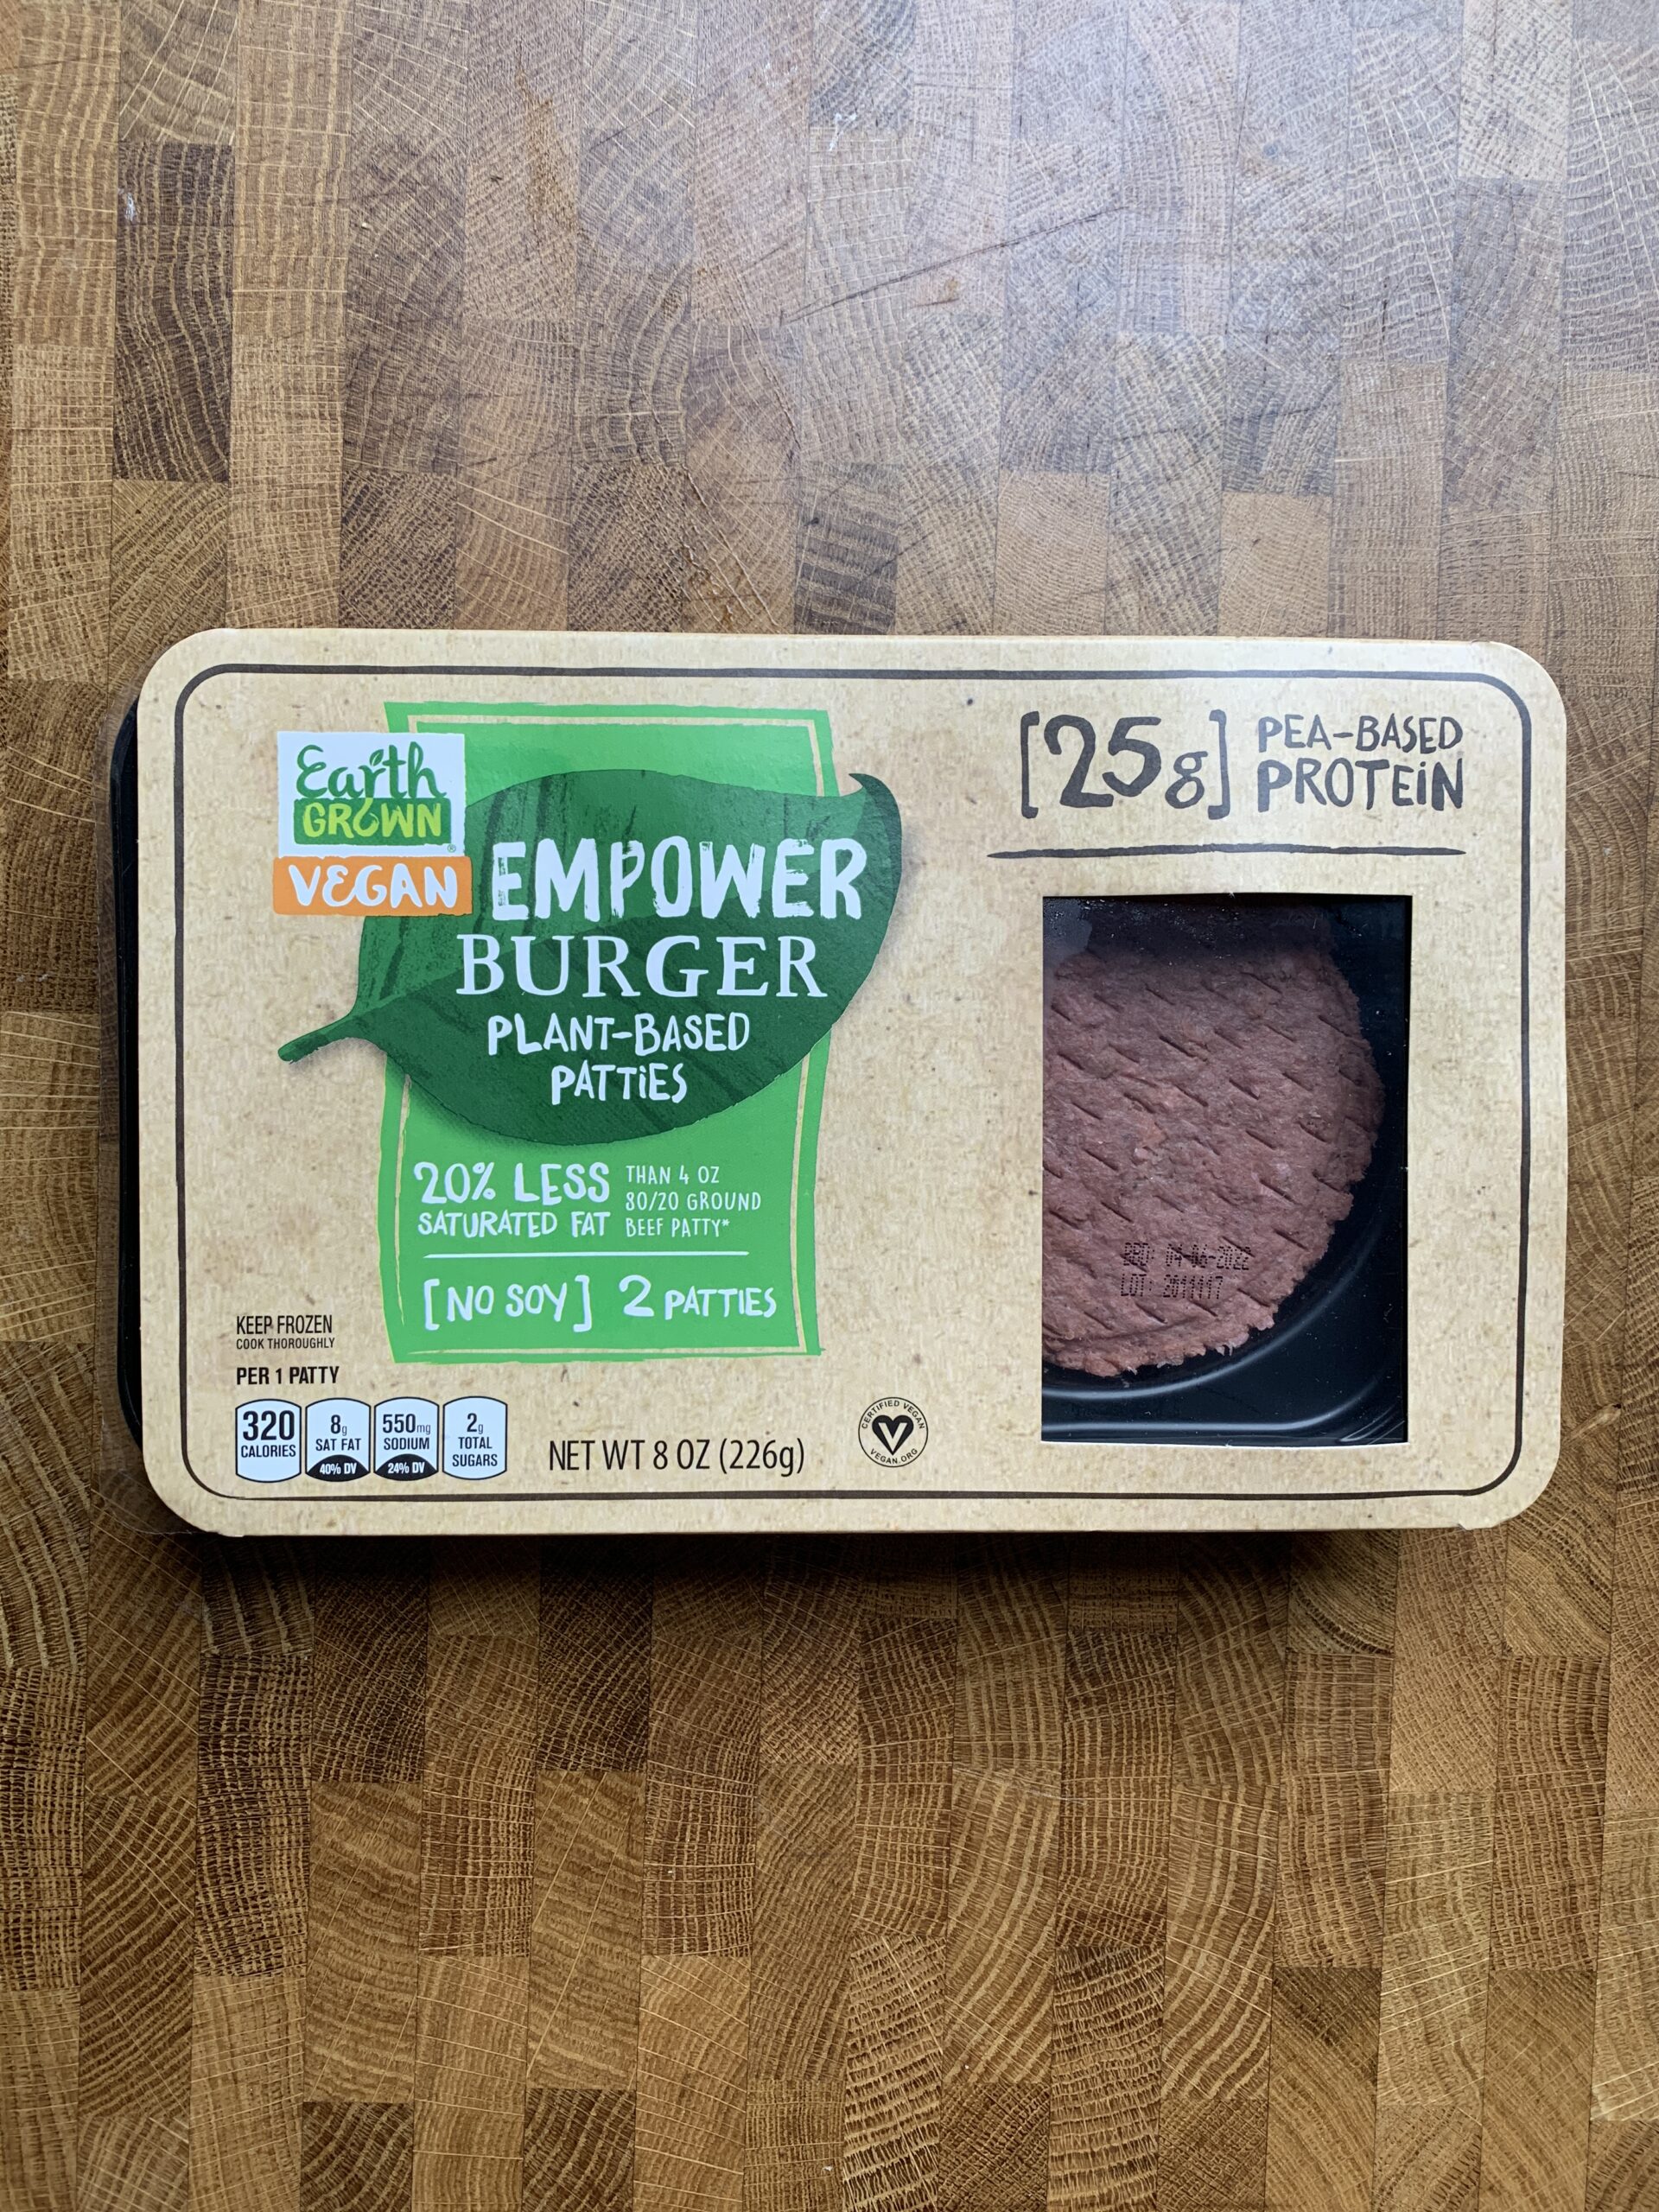 Earth Grown Vegan Empower burger patties package.